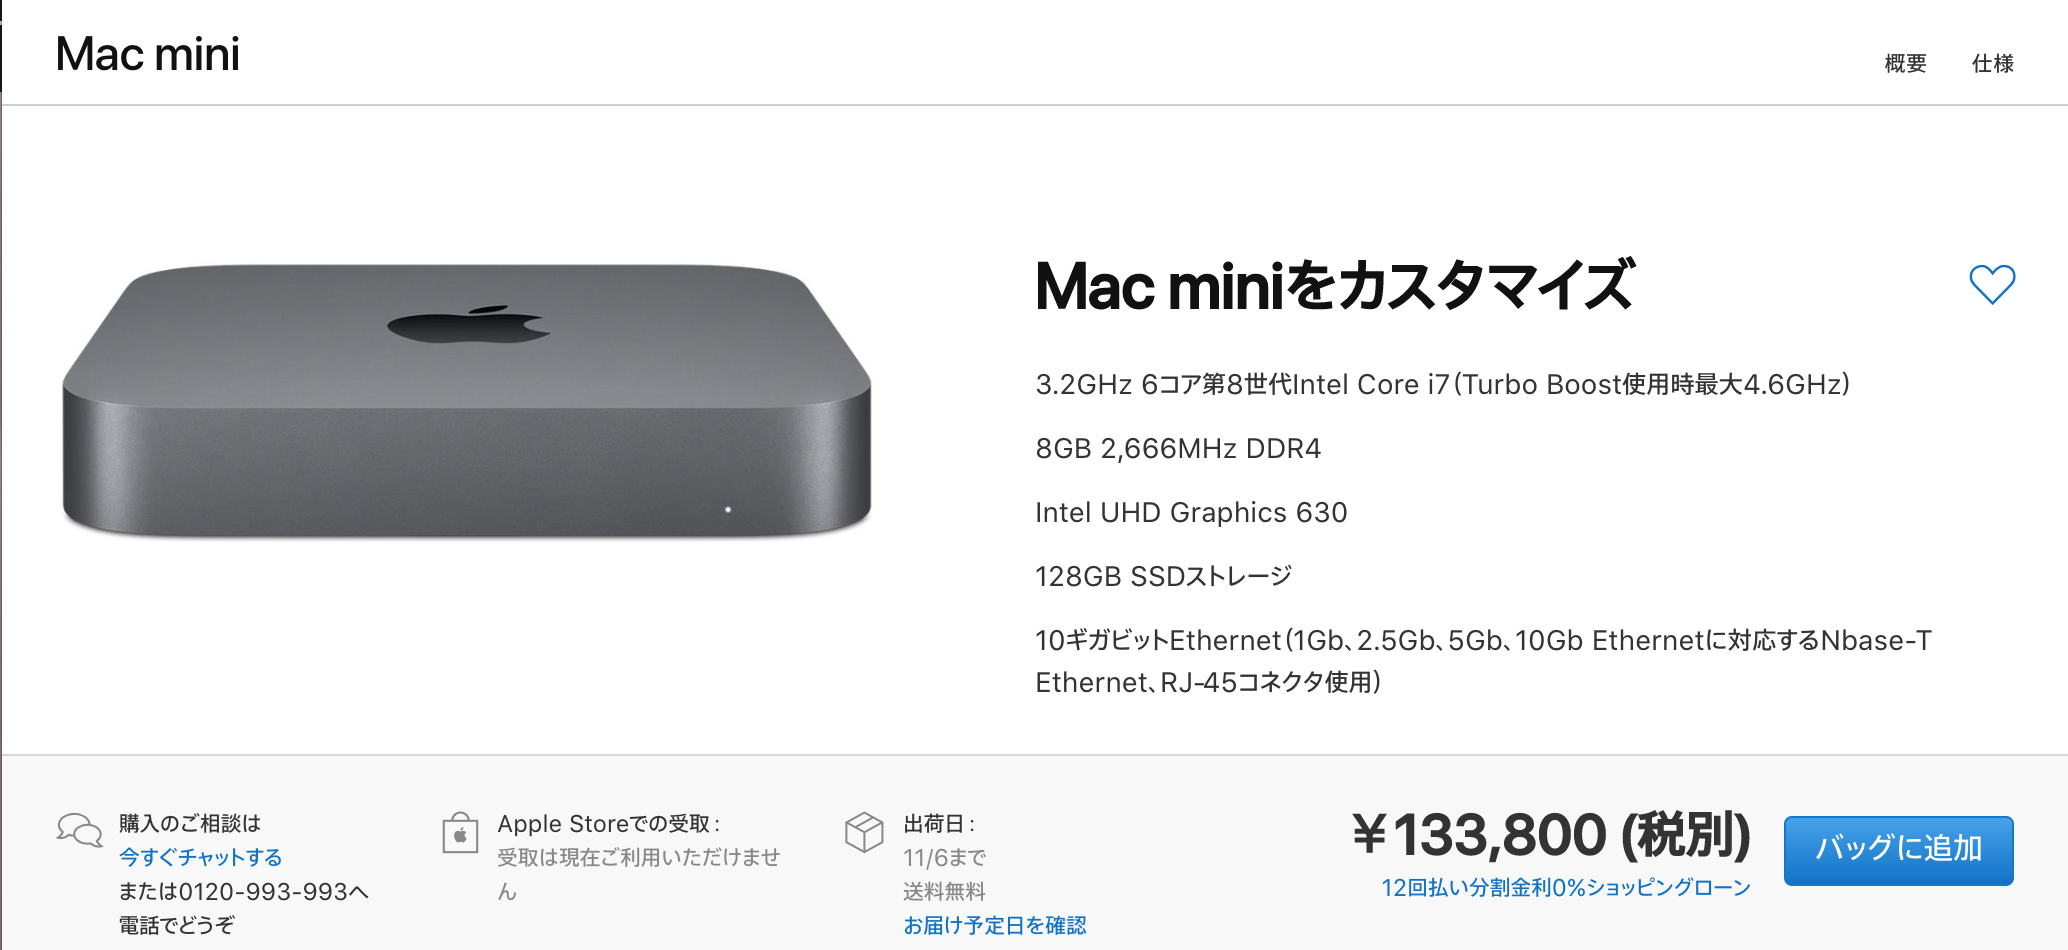 Apple Mac mini 2018 model No.A1995